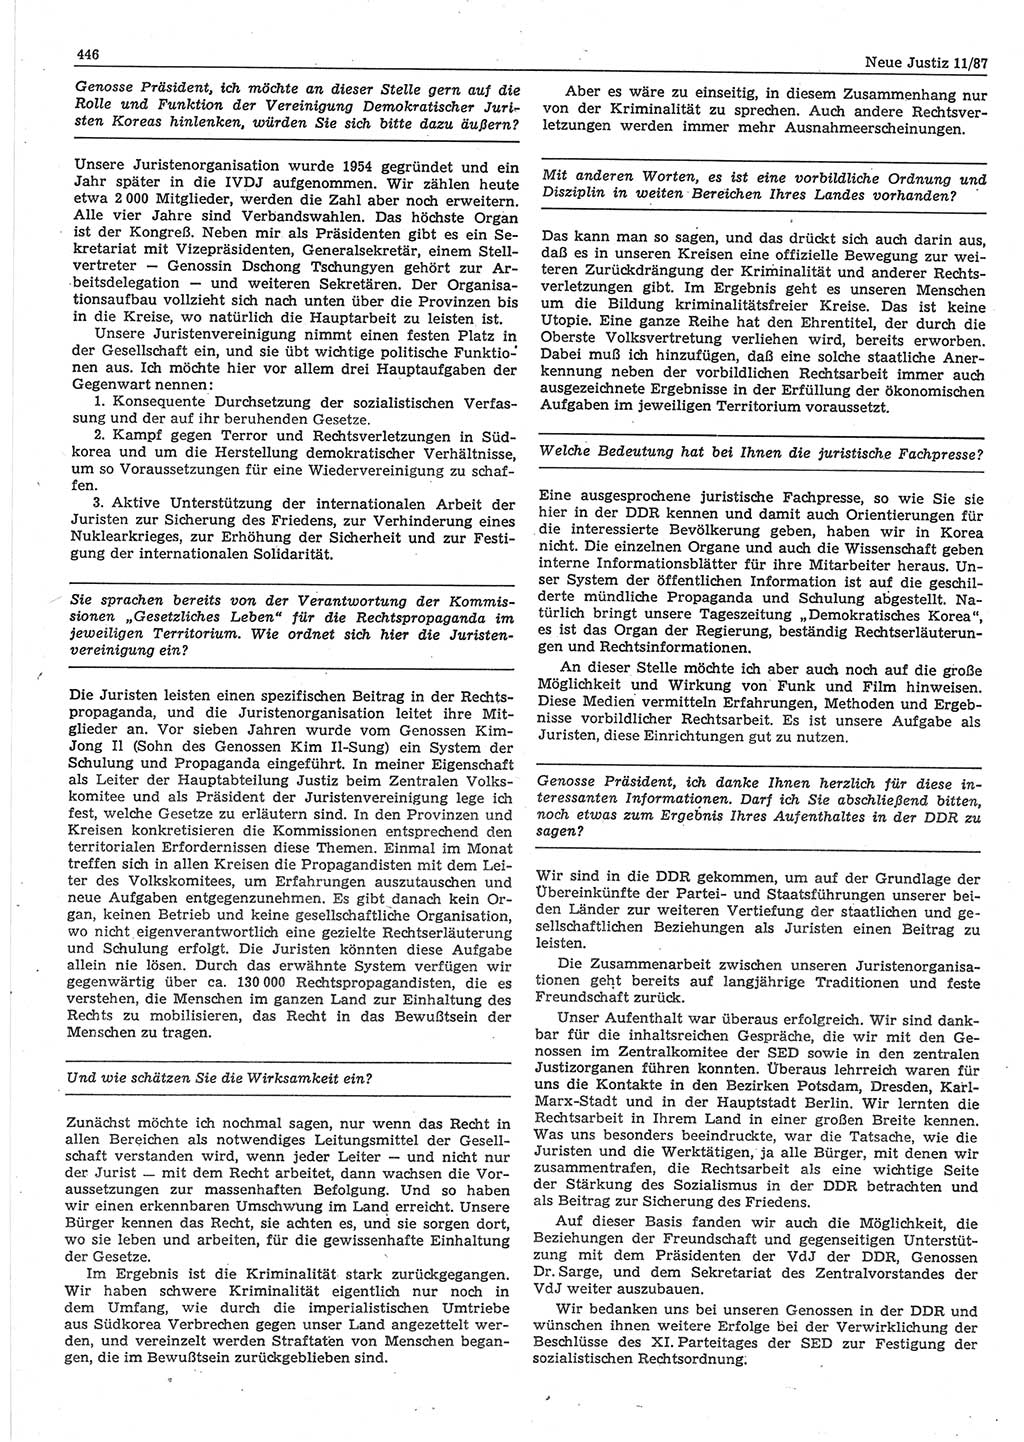 Neue Justiz (NJ), Zeitschrift für sozialistisches Recht und Gesetzlichkeit [Deutsche Demokratische Republik (DDR)], 41. Jahrgang 1987, Seite 446 (NJ DDR 1987, S. 446)